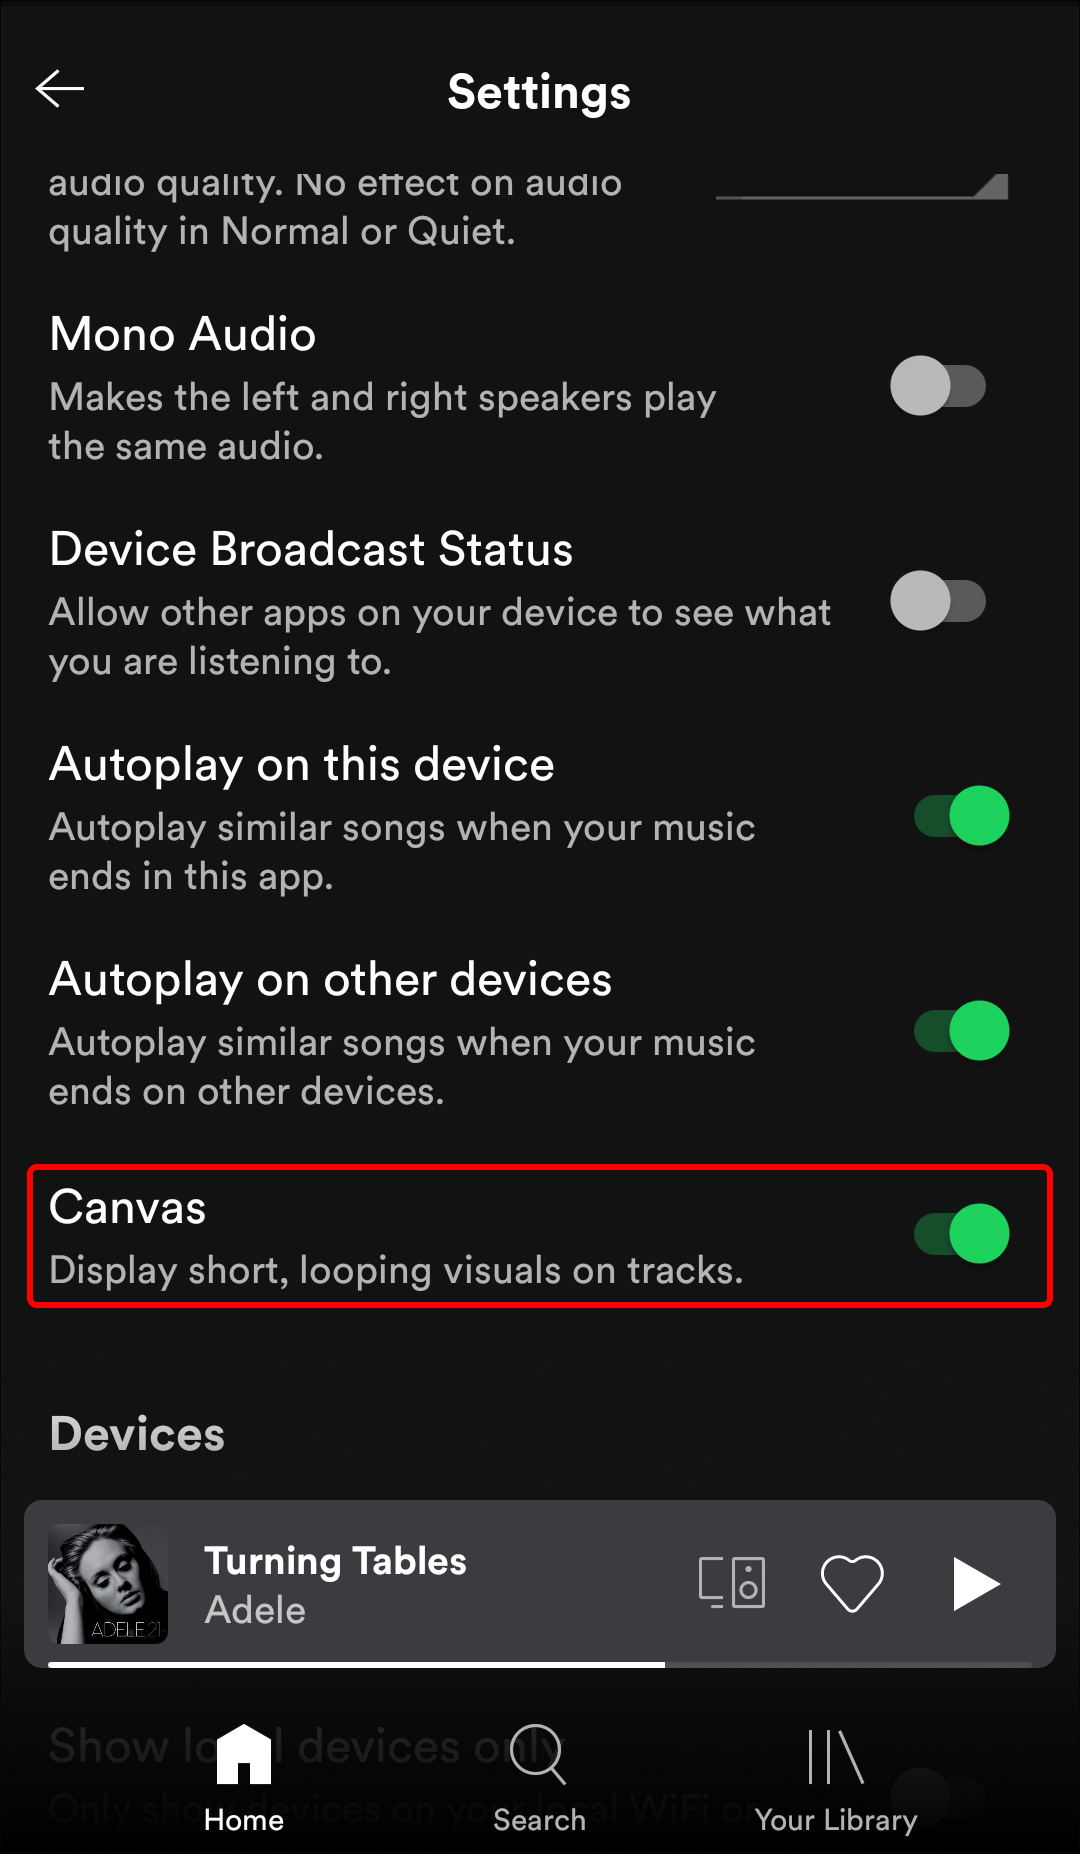 Canvas trên Spotify là một tính năng độc đáo giúp cho người dùng có thể tạo những đoạn video ngắn với âm nhạc. Tính năng này cho phép bạn dễ dàng tạo ra những video hack não với âm nhạc và hình ảnh đầy ấn tượng. Hãy xem ảnh về cách bật tắt Canvas trên Spotify để khám phá tính năng này.